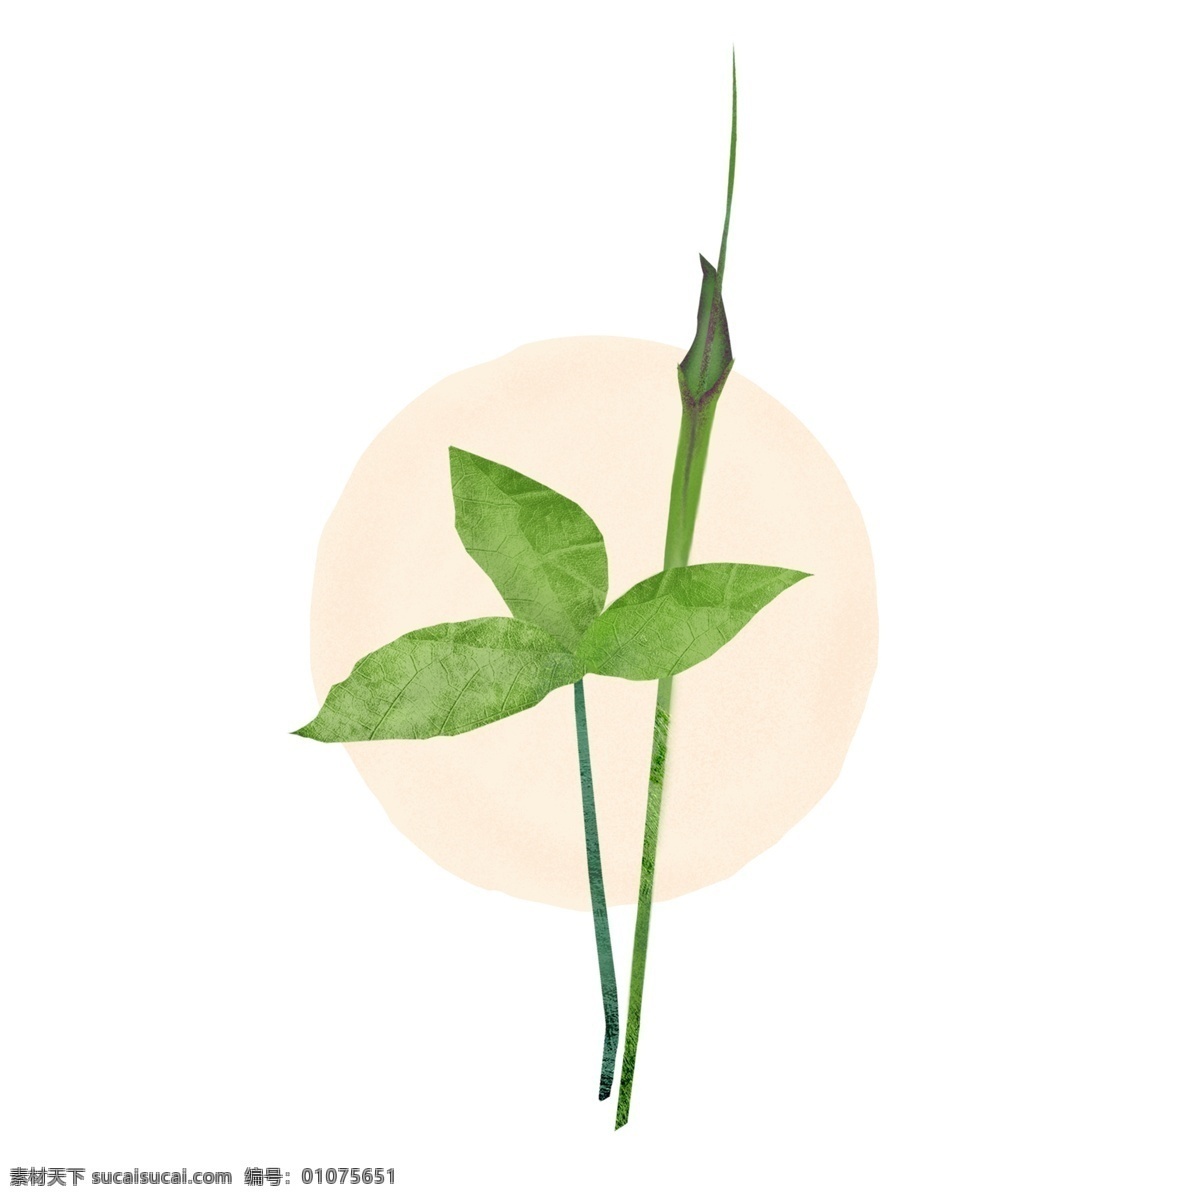 夏至 半夏 植物 中草药 古风 纹理 插画 绿色 叶子 花 质感 元素 传统 文艺 典雅 中国风